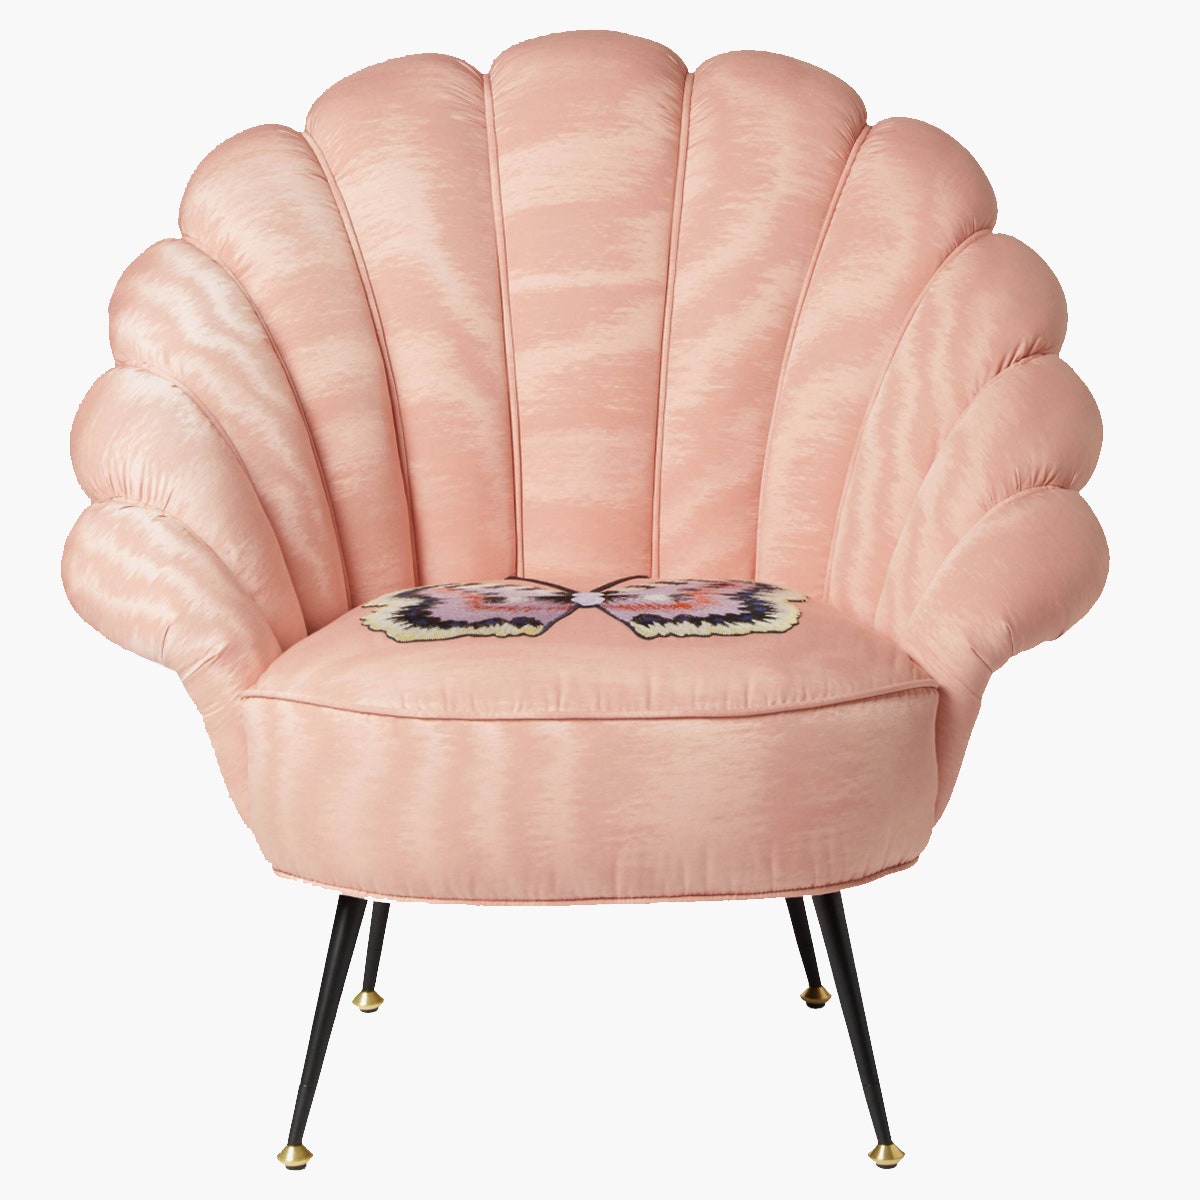 Кресло Gucci цена по запросу gucci.com